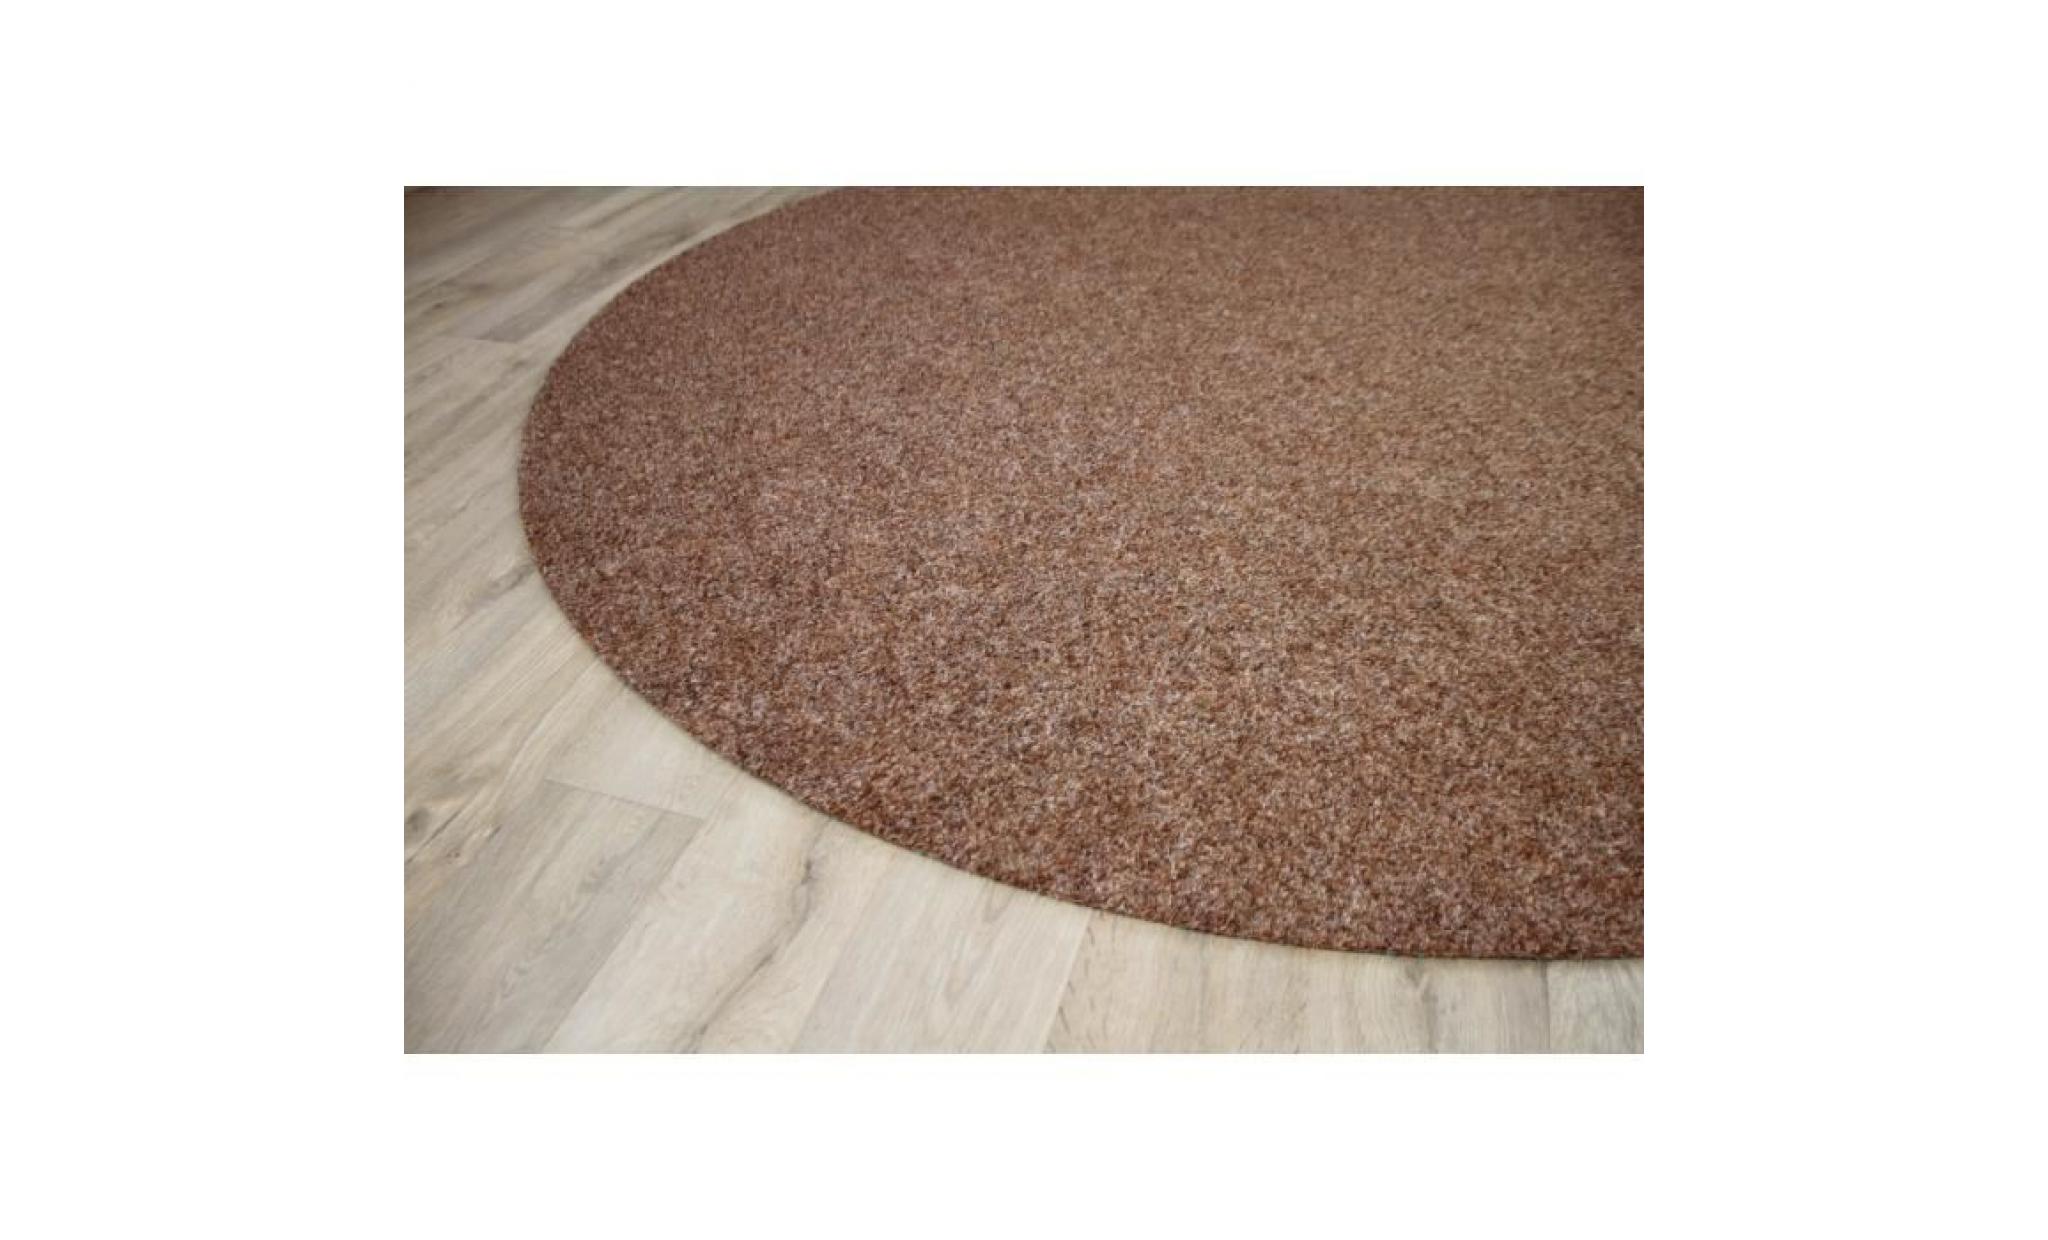 kingston   tapis type gazon artificiel rond – pour jardin, terrasse, balcon   brun   13 tailles disponibles [200 cm rond] pas cher